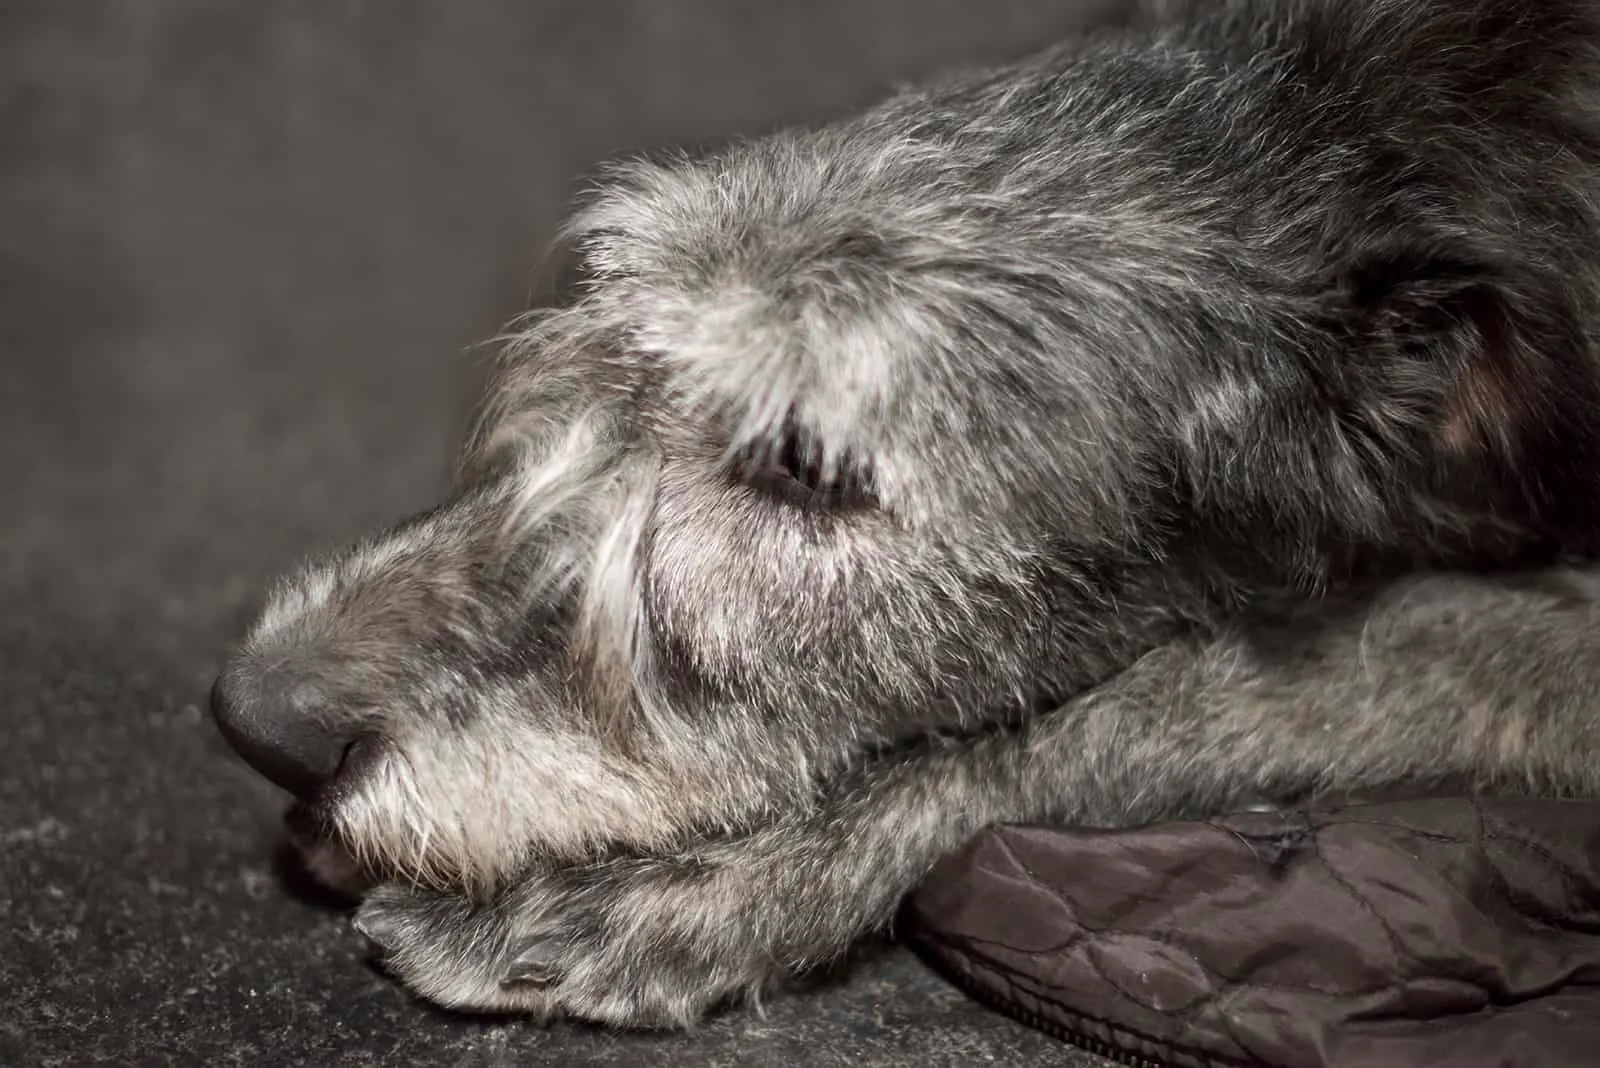 irish wolfhound dog lying